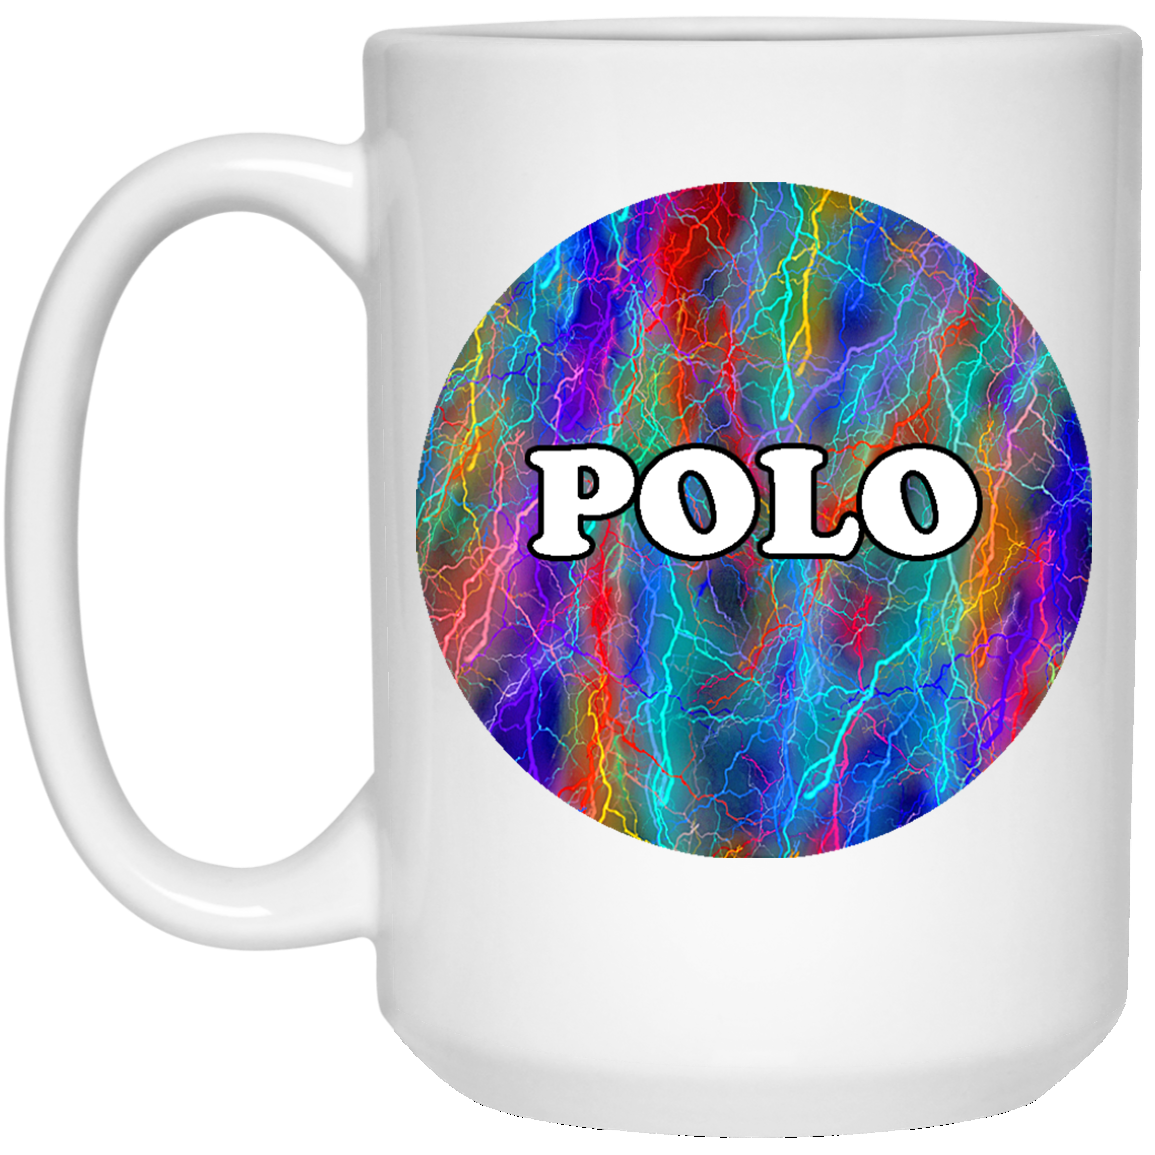 Polo Mug